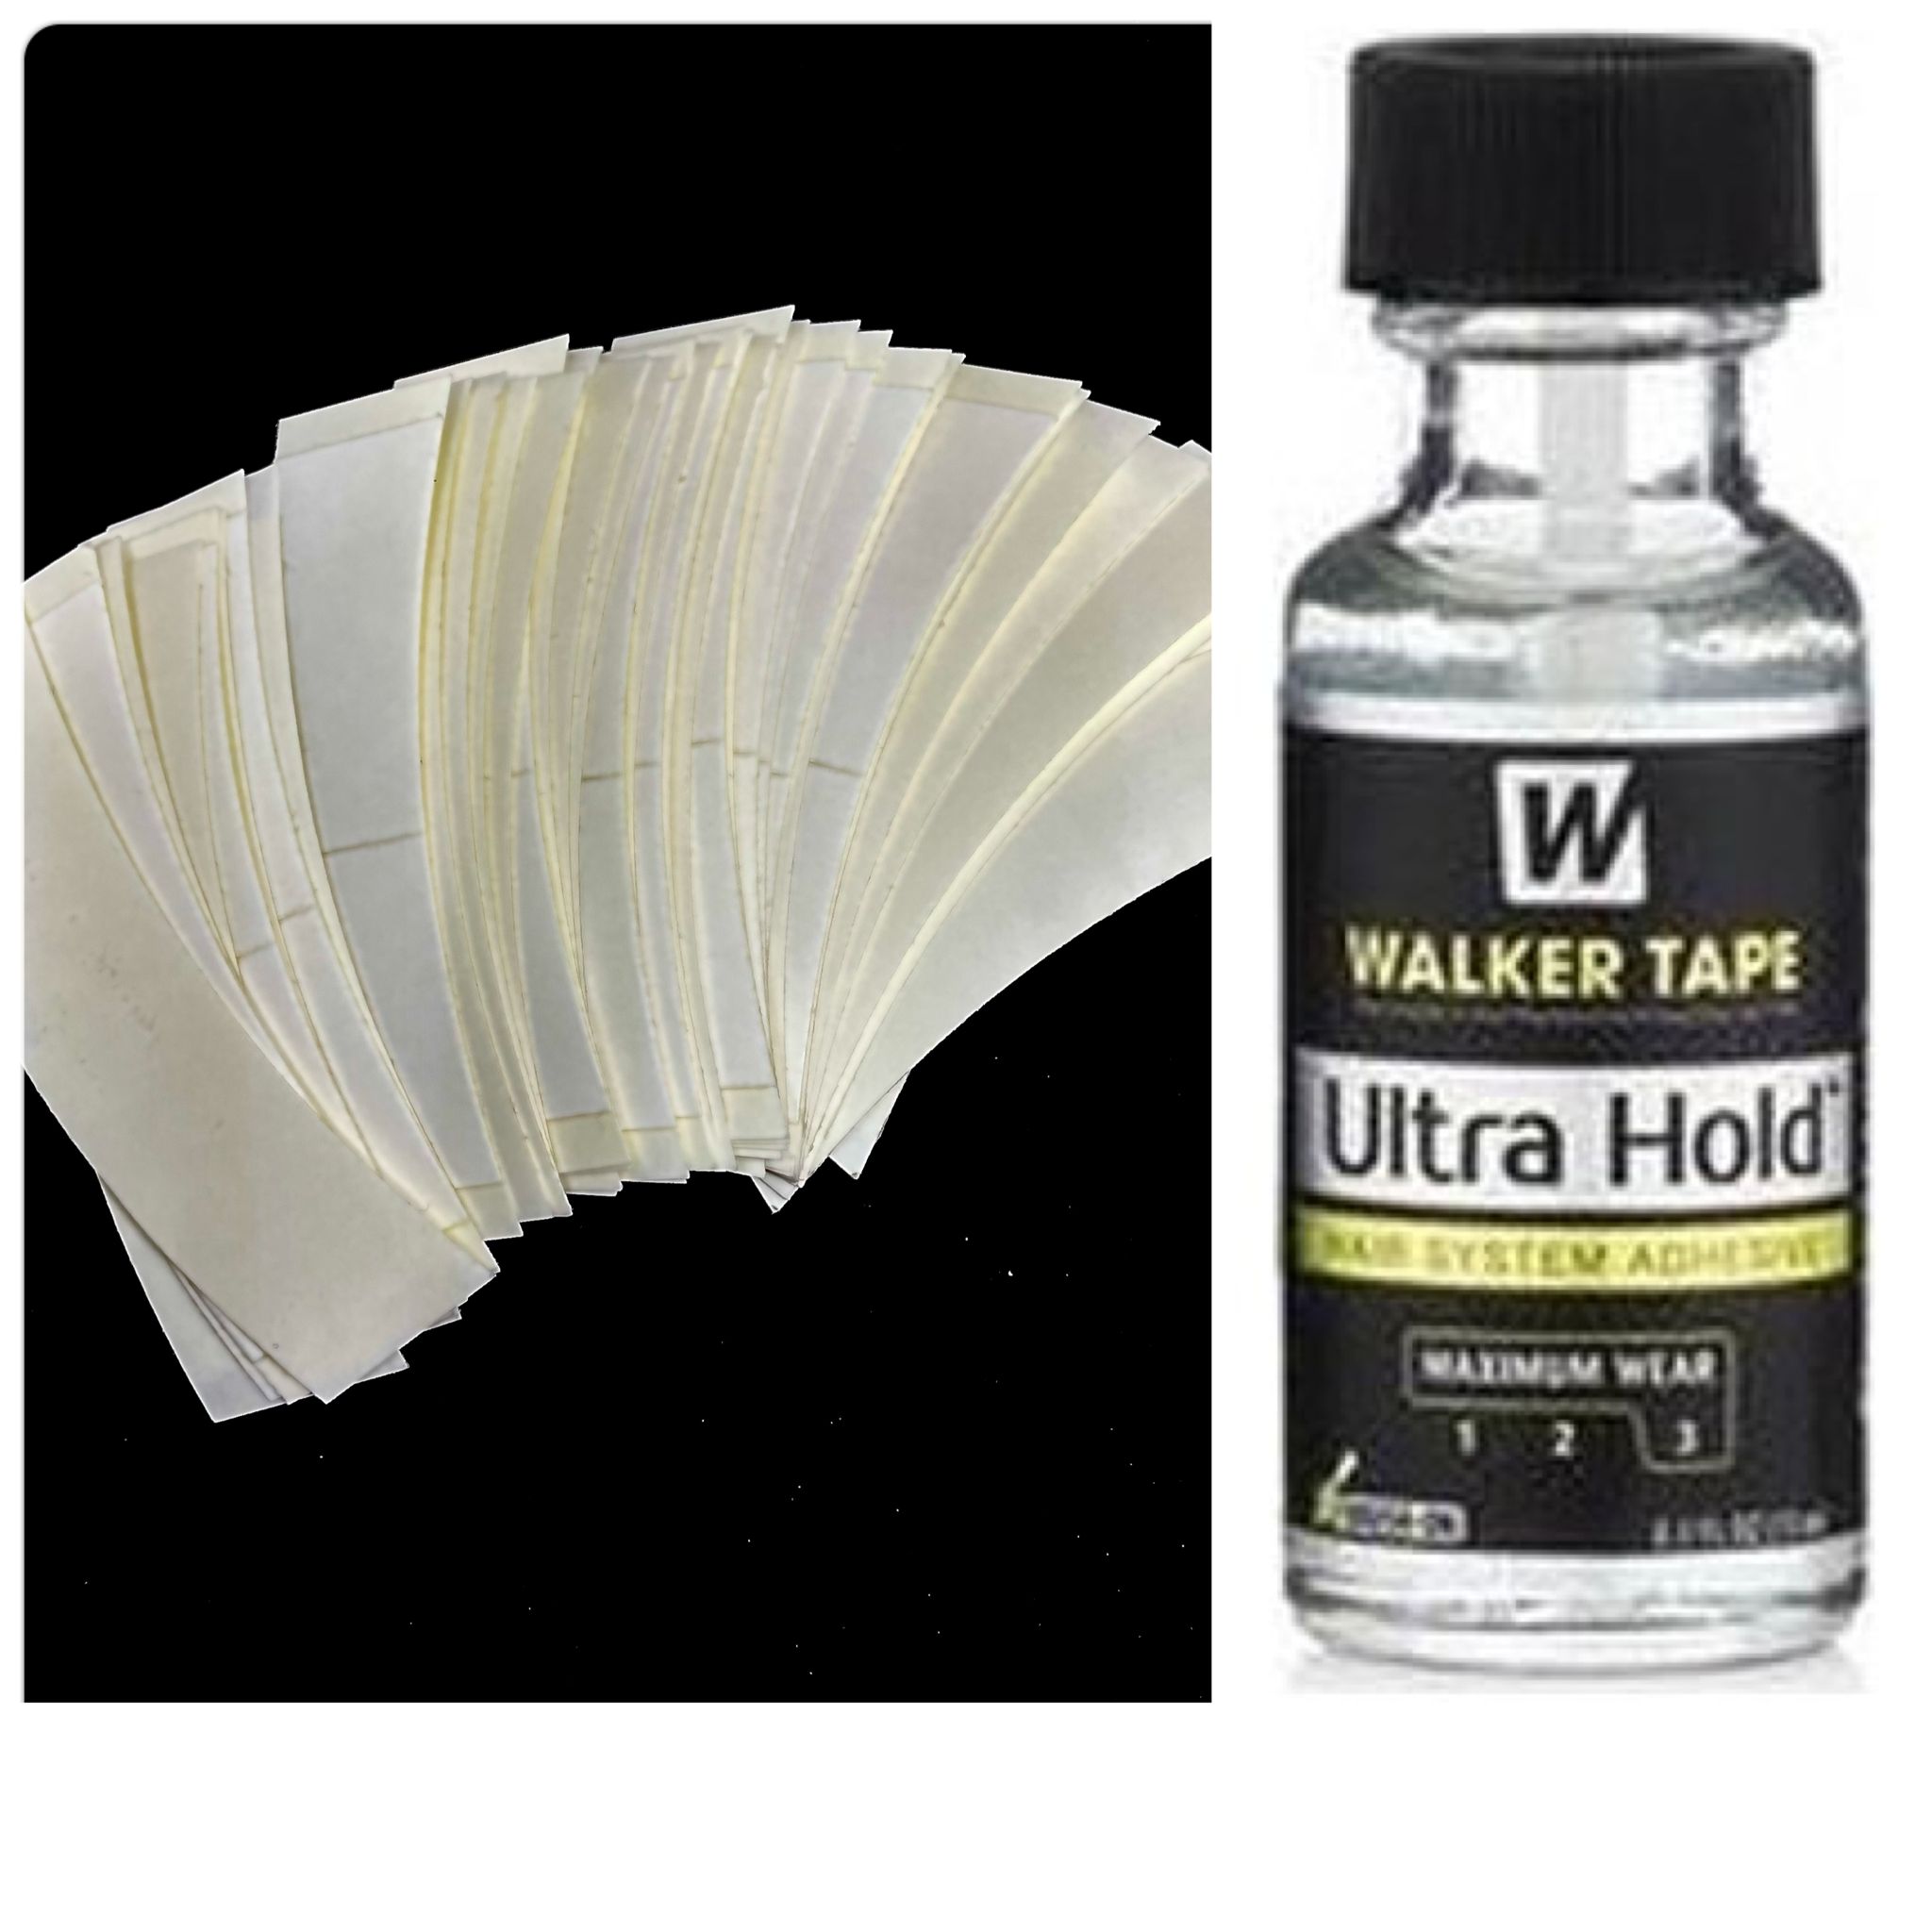 Walker Tape Ultra Hold Protez Saç Likid Yapıştırıcısı 15ml + Beyaz Bant 36 Adet